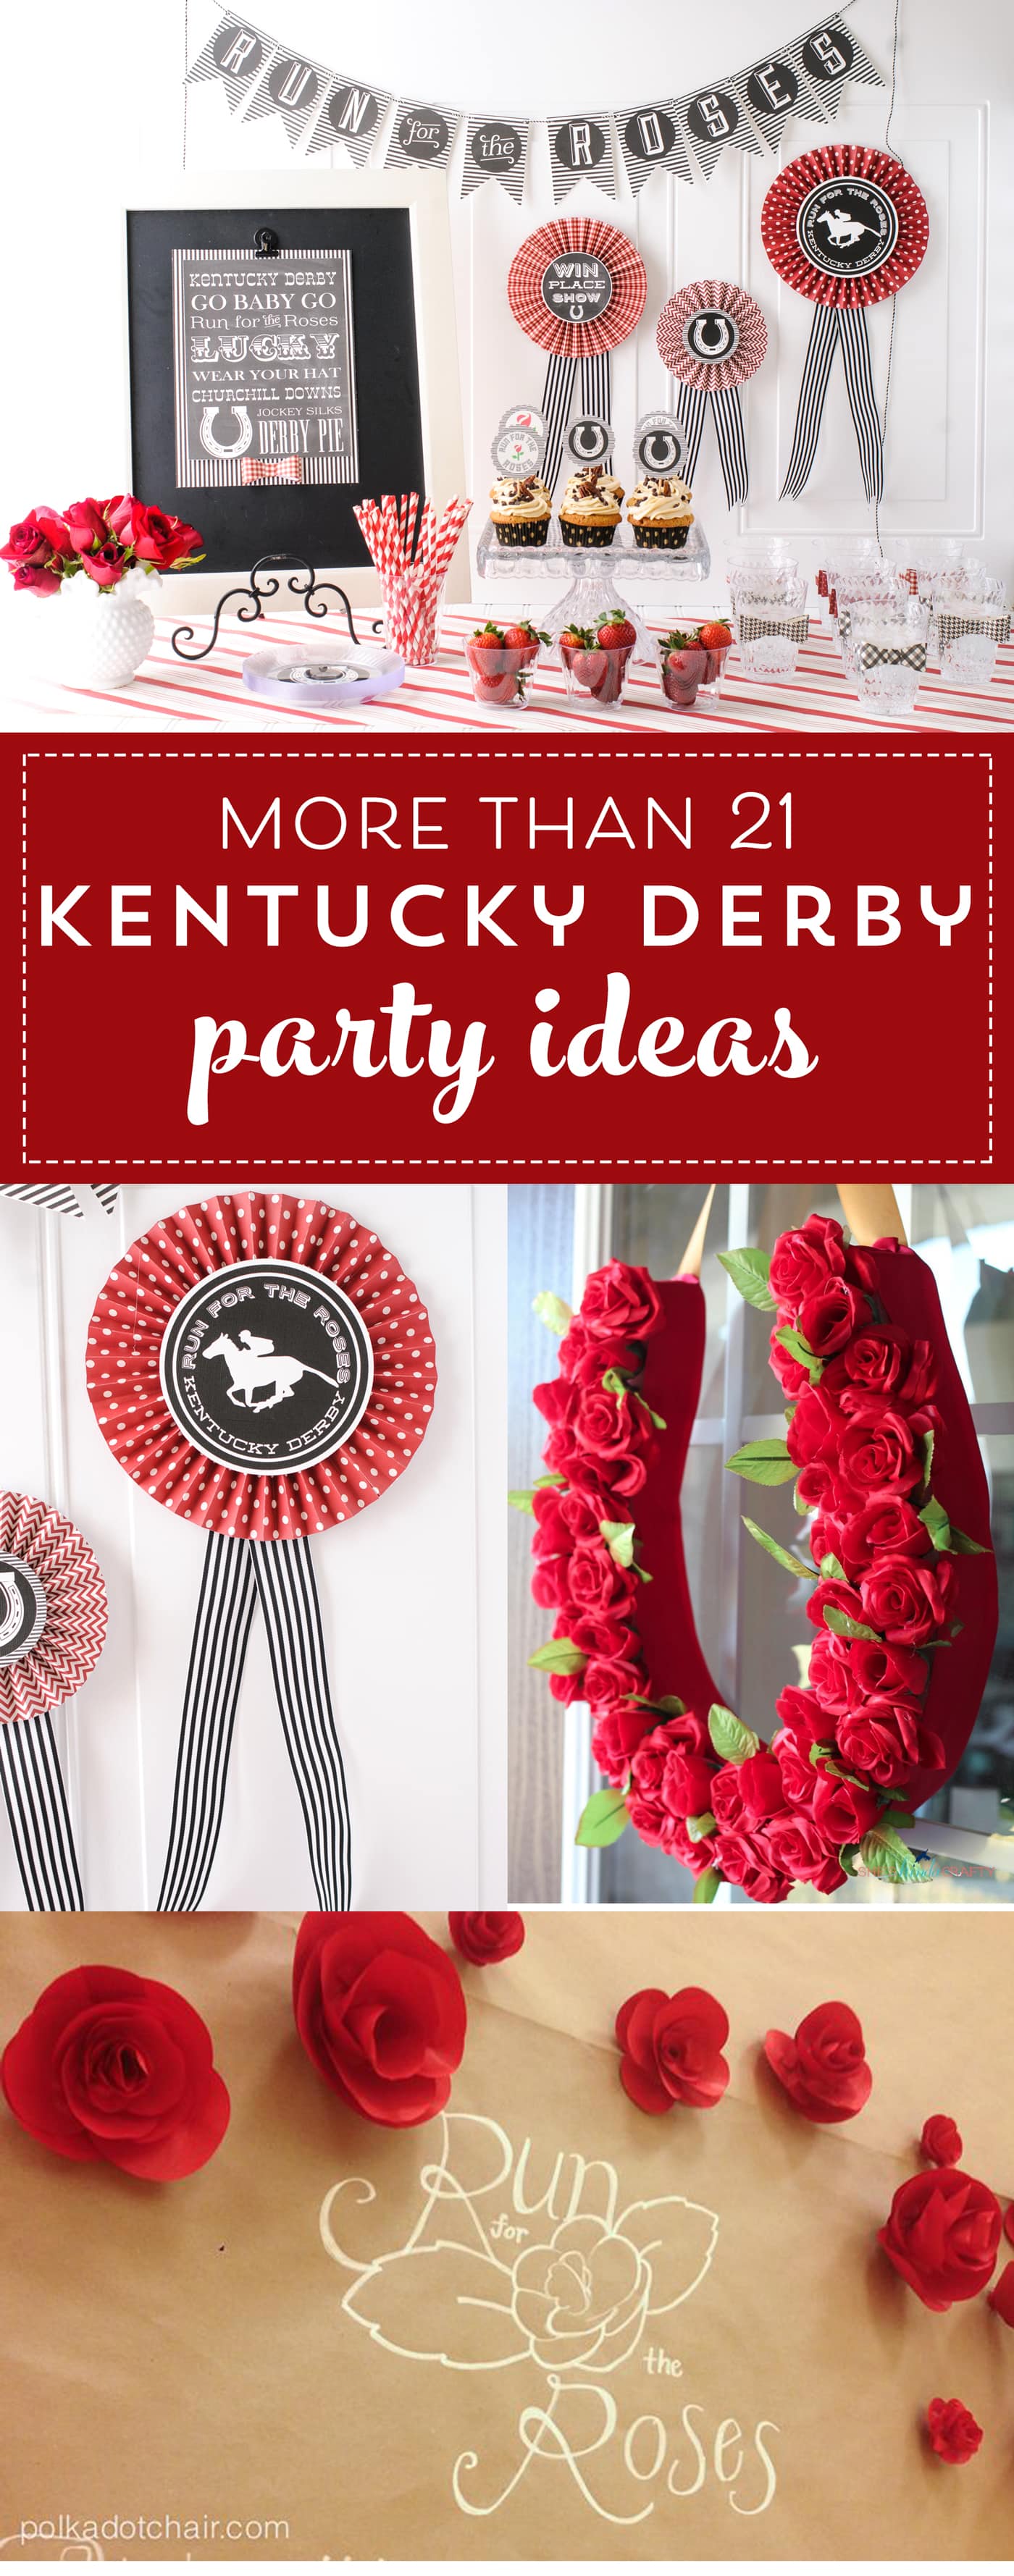 21-adorable-kentucky-derby-party-ideas-the-polka-dot-chair